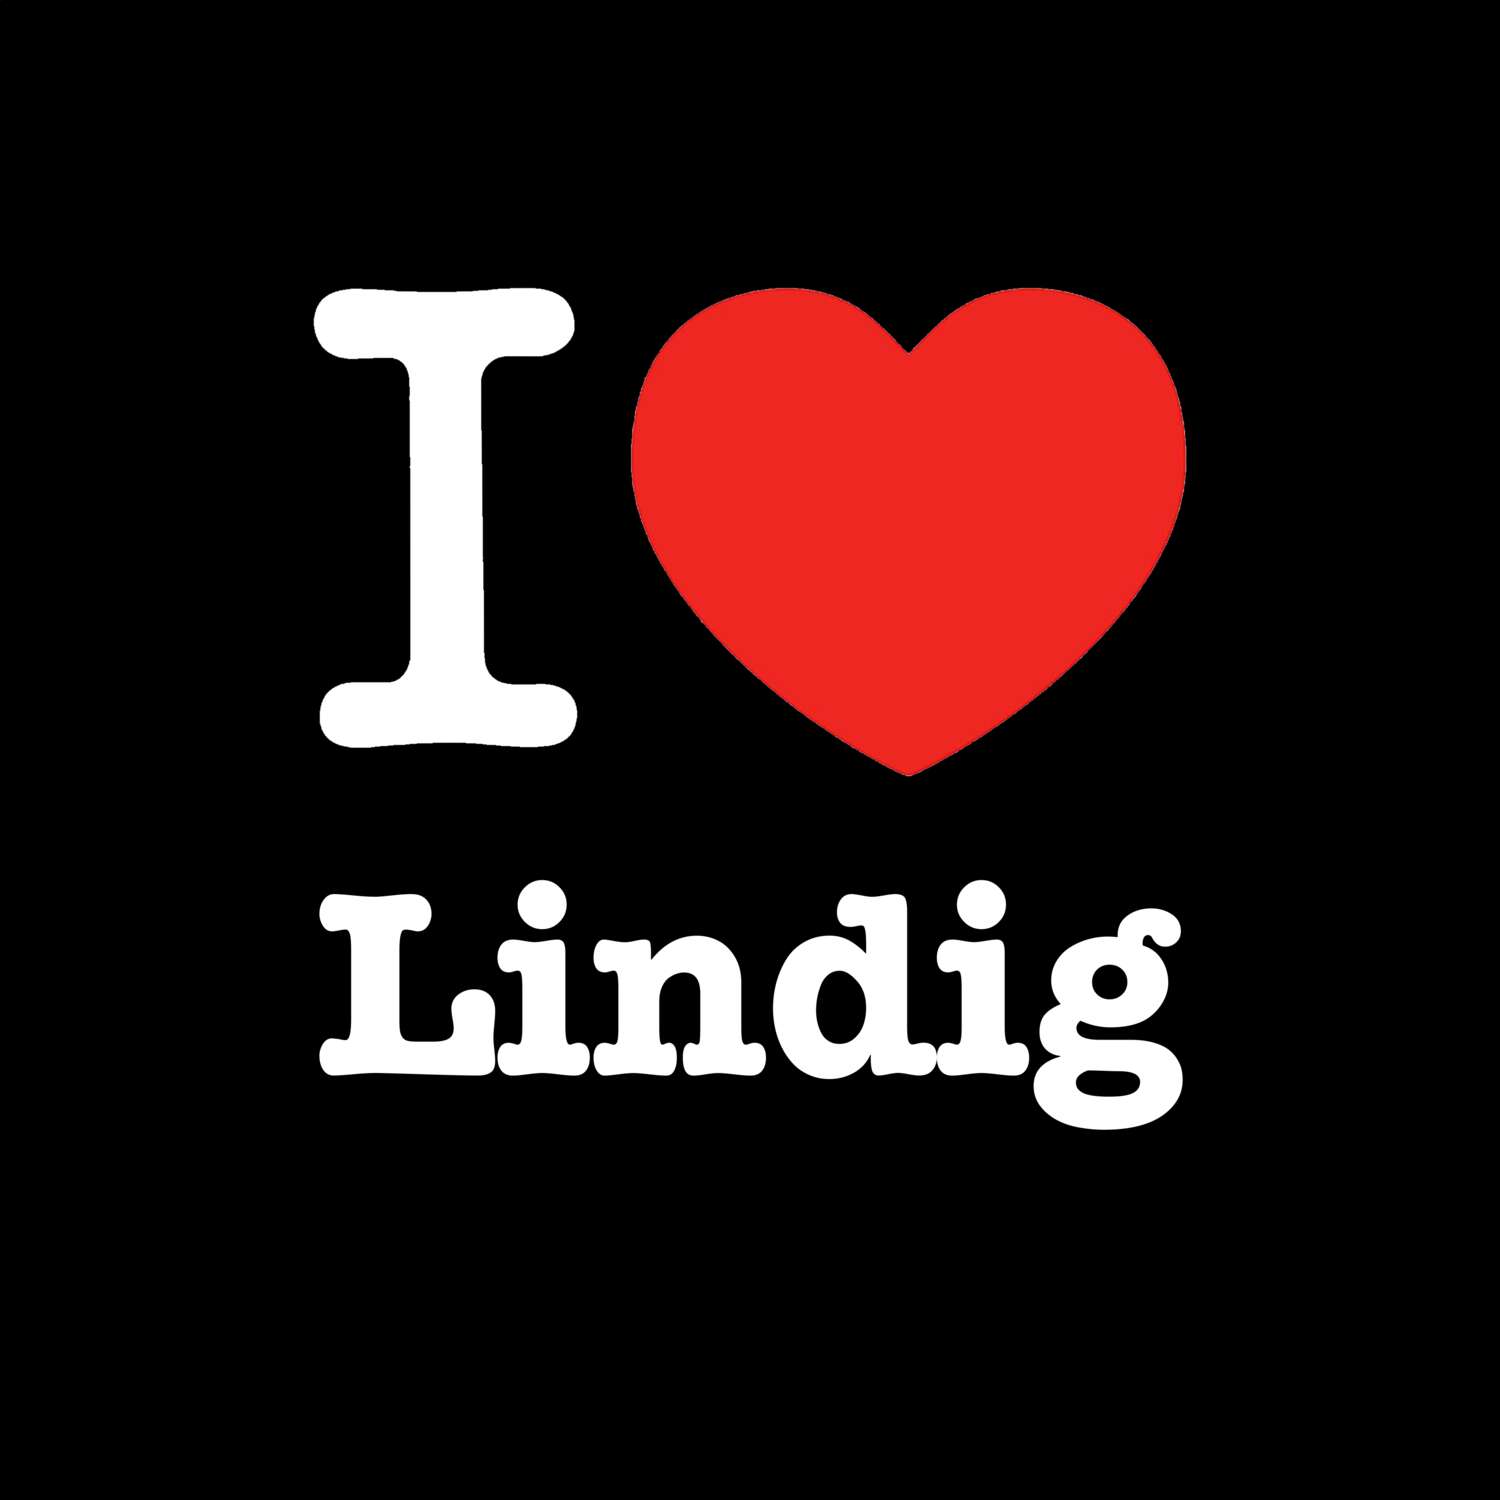 Lindig T-Shirt »I love«